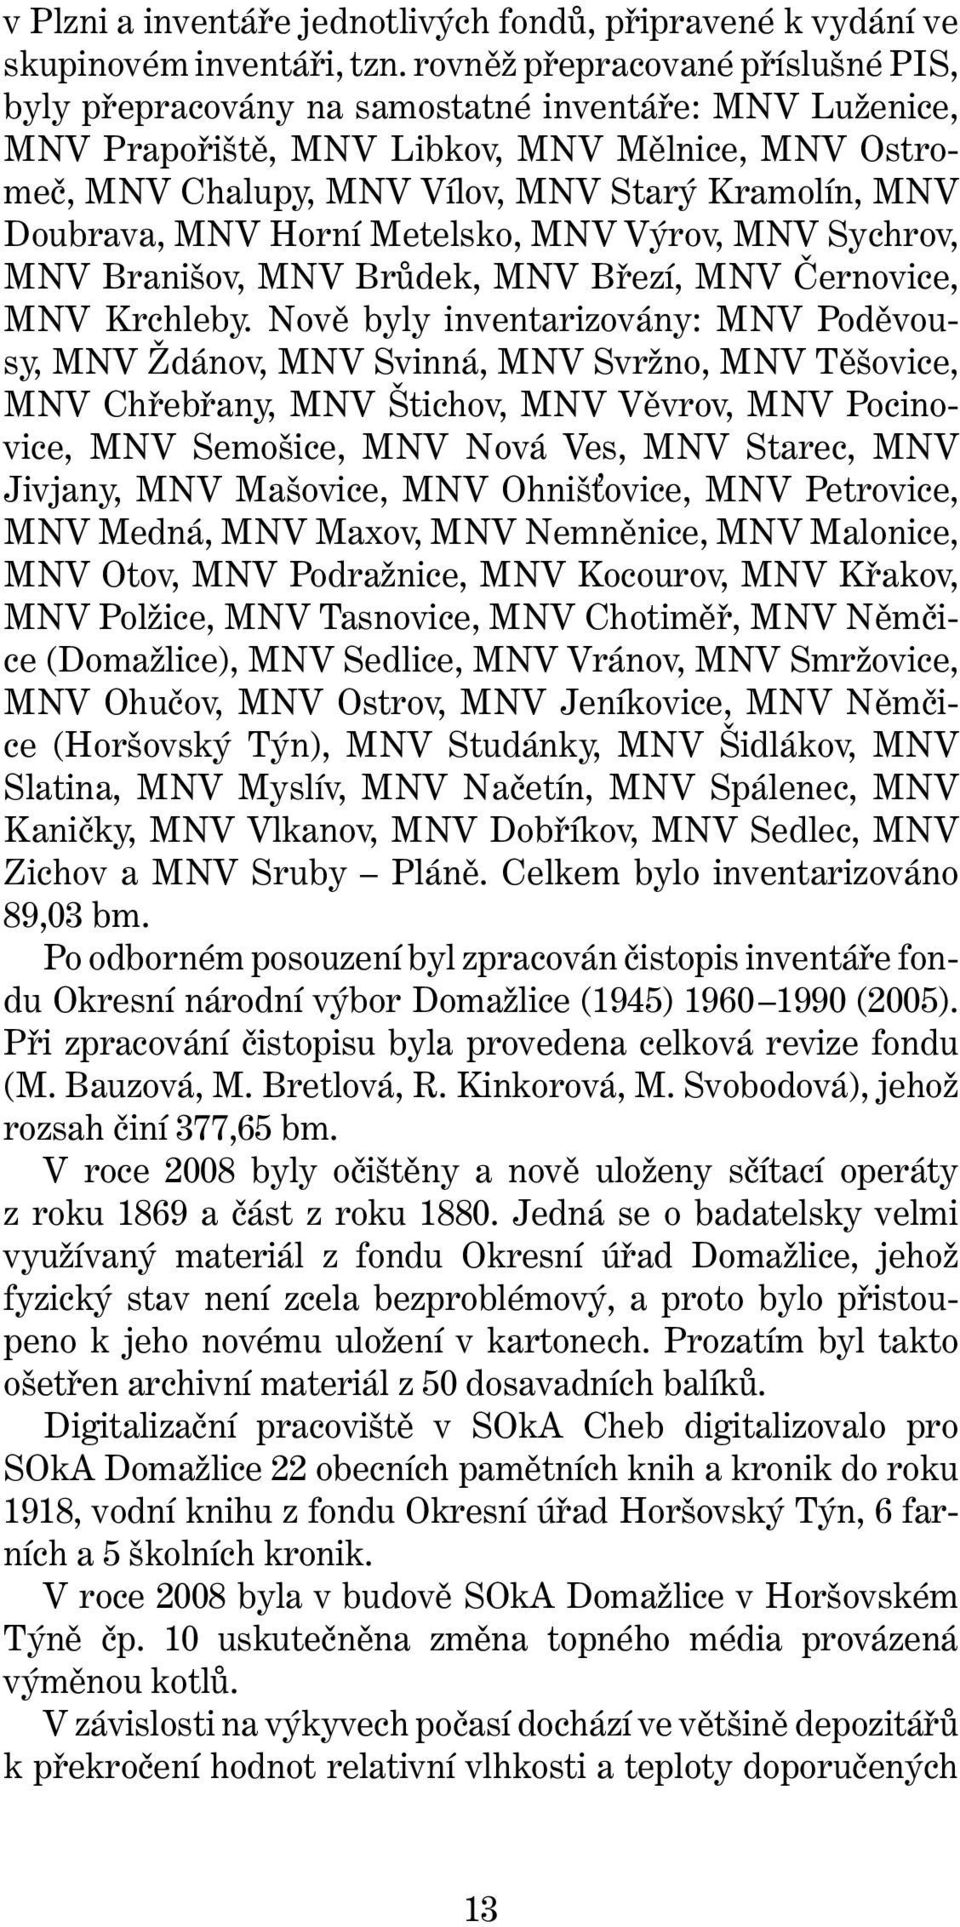 Doubrava, MNV Horní Metelsko, MNV Výrov, MNV Sychrov, MNV Branišov, MNV Brůdek, MNV Březí, MNV Černovice, MNV Krchleby.